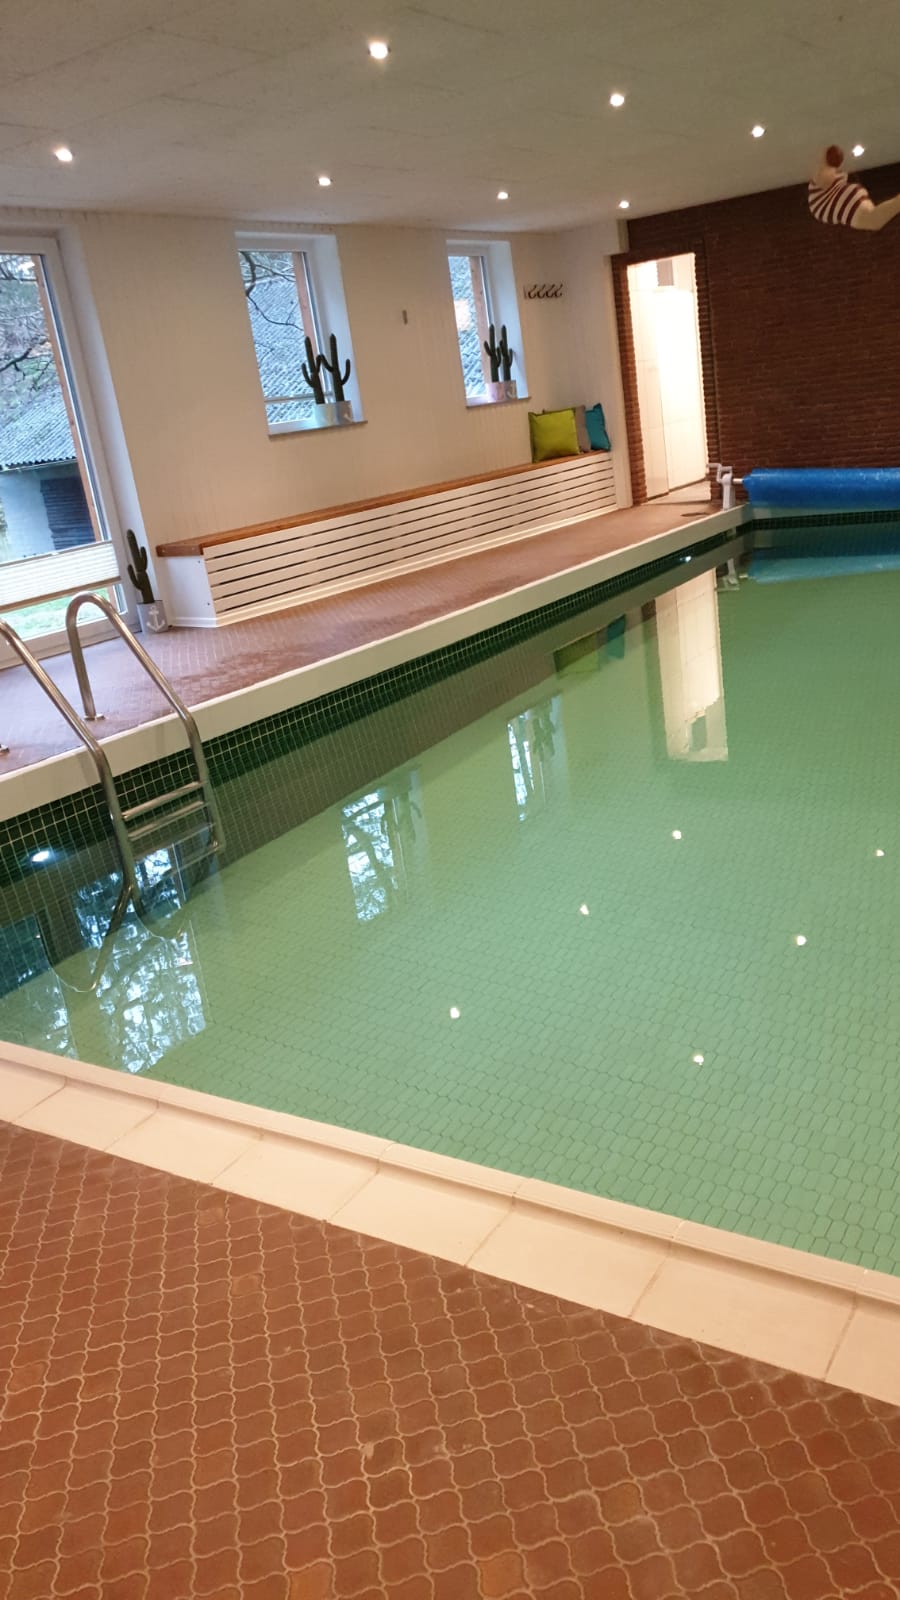 Schwimmbad 5 x 10 m, Tiefe rund 1,50m